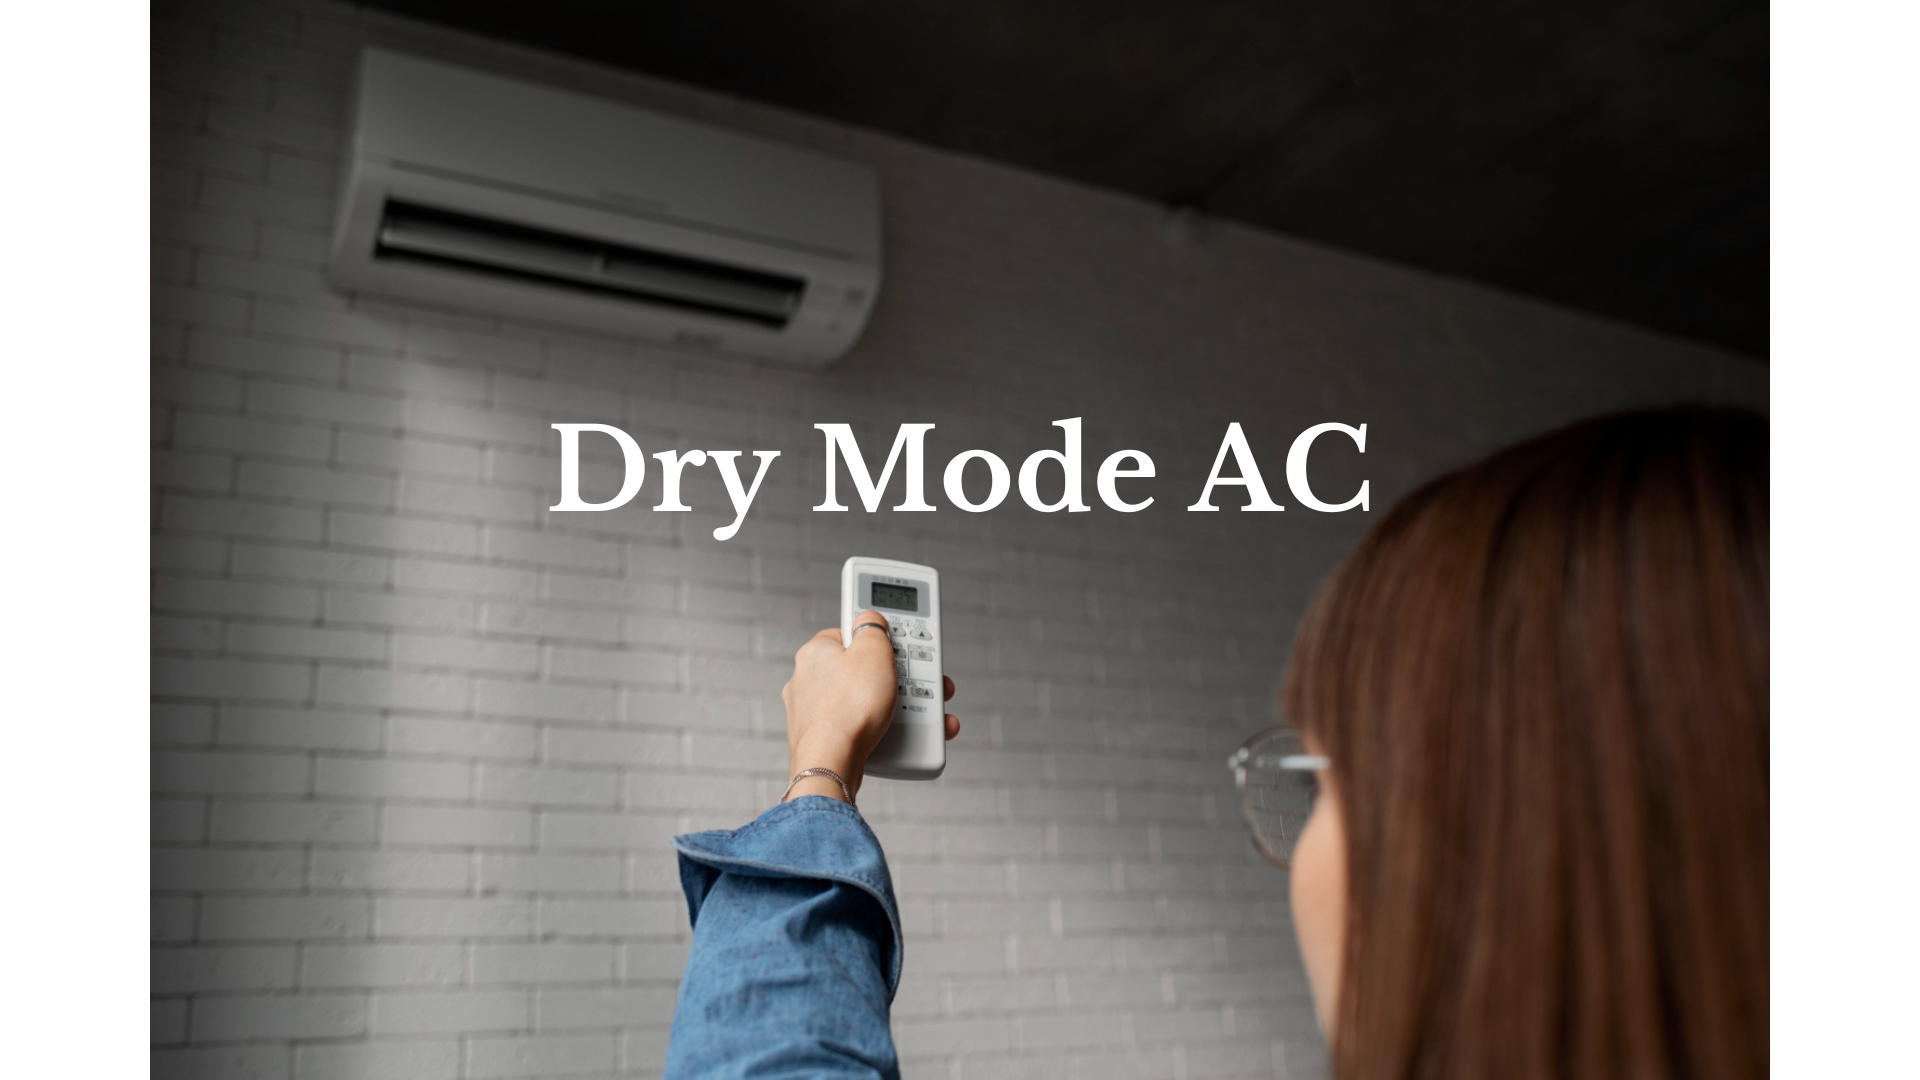 Manfaat Dry Mode AC Serta Cara Menggunakannya